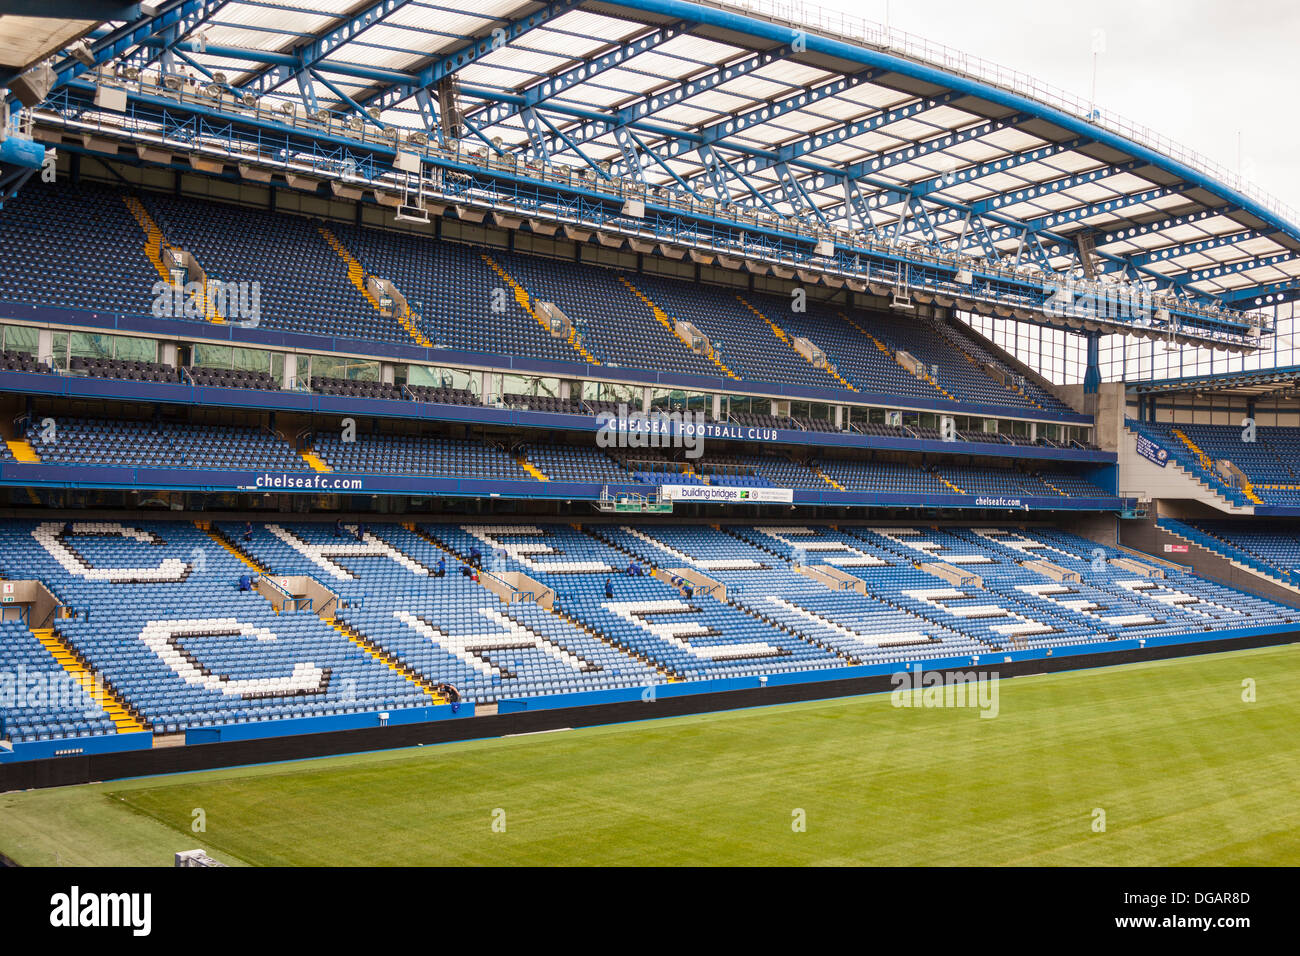 Le stand de l'Ouest, le Club de Football de Chelsea, Stamford Bridge, Chelsea, Londres, Angleterre Banque D'Images